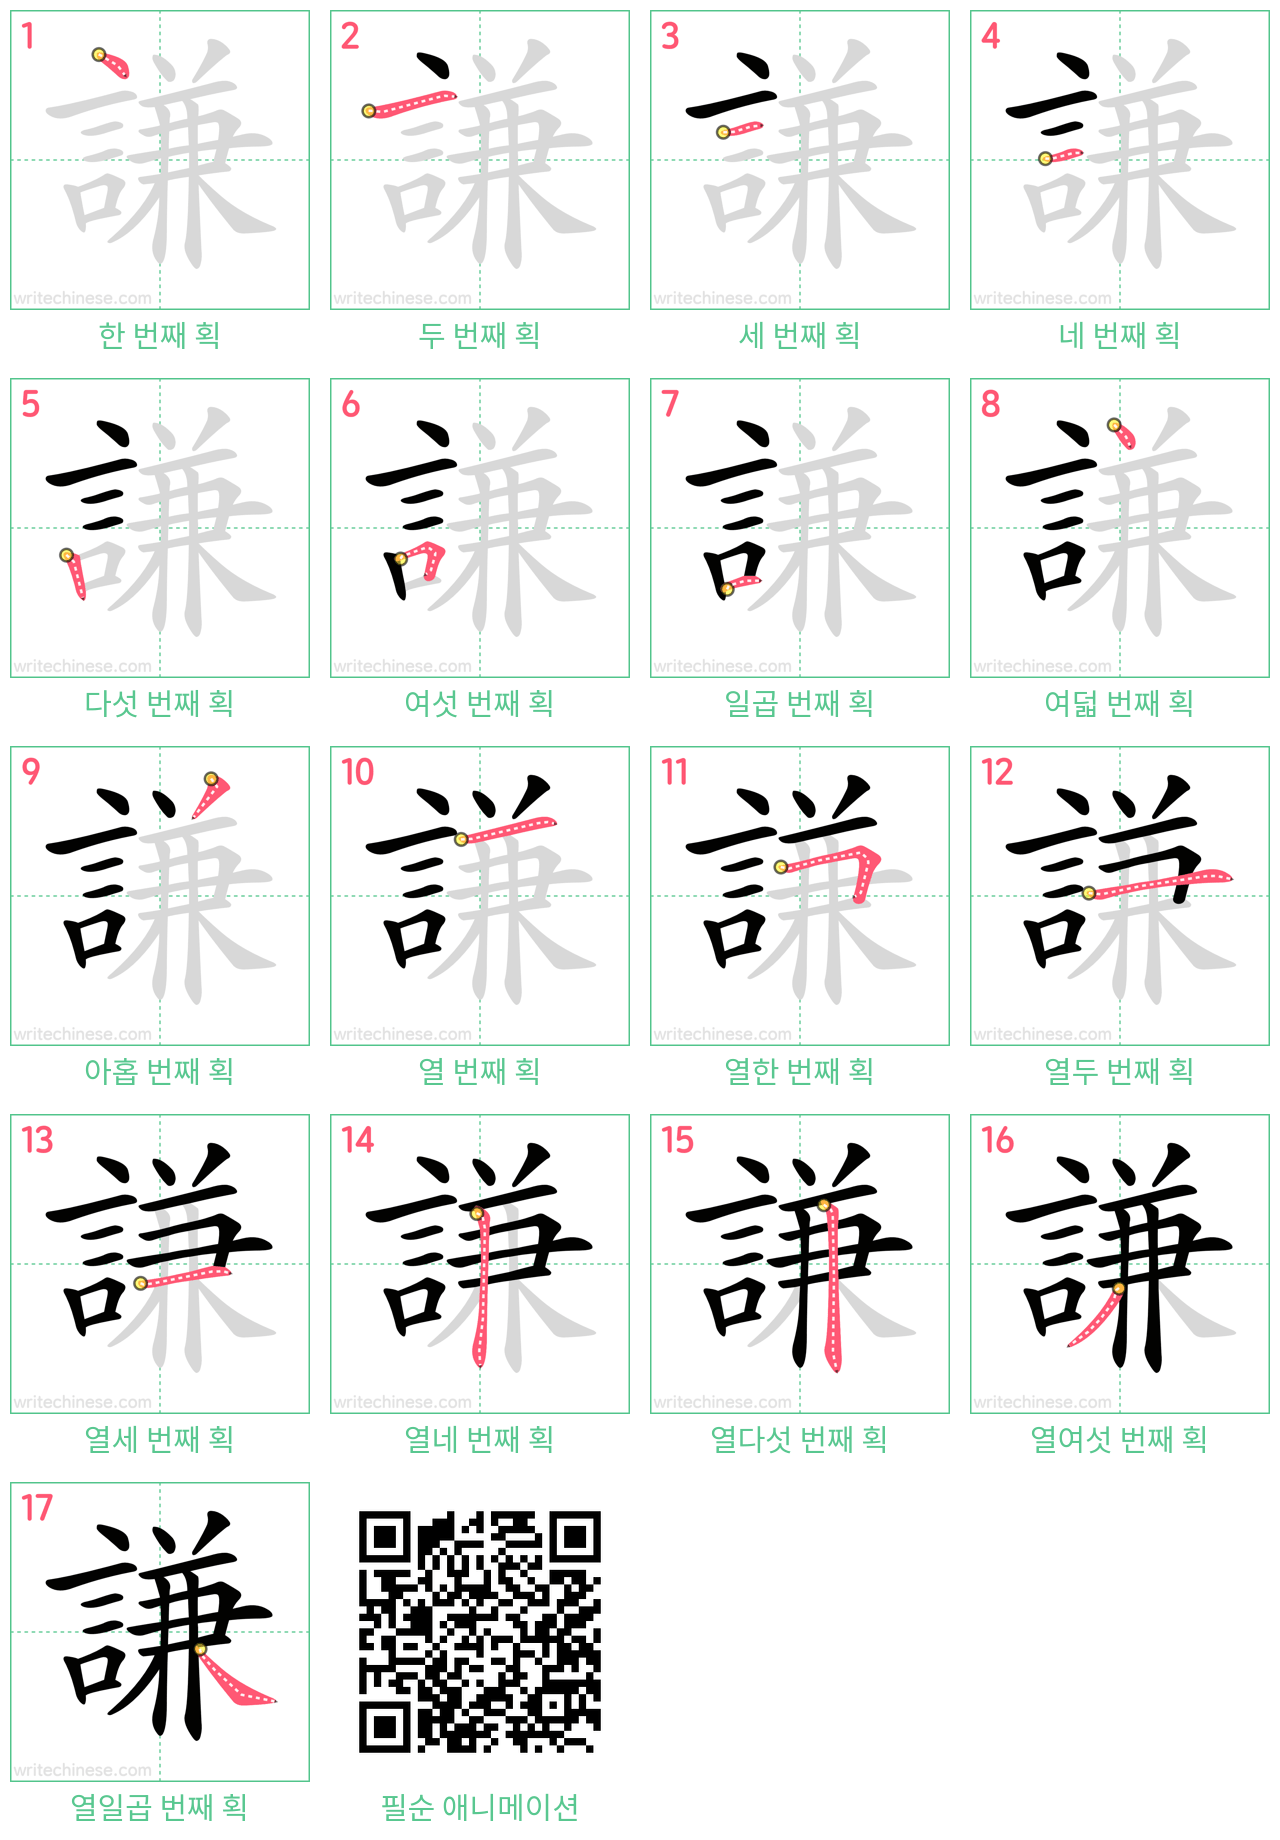 謙 step-by-step stroke order diagrams